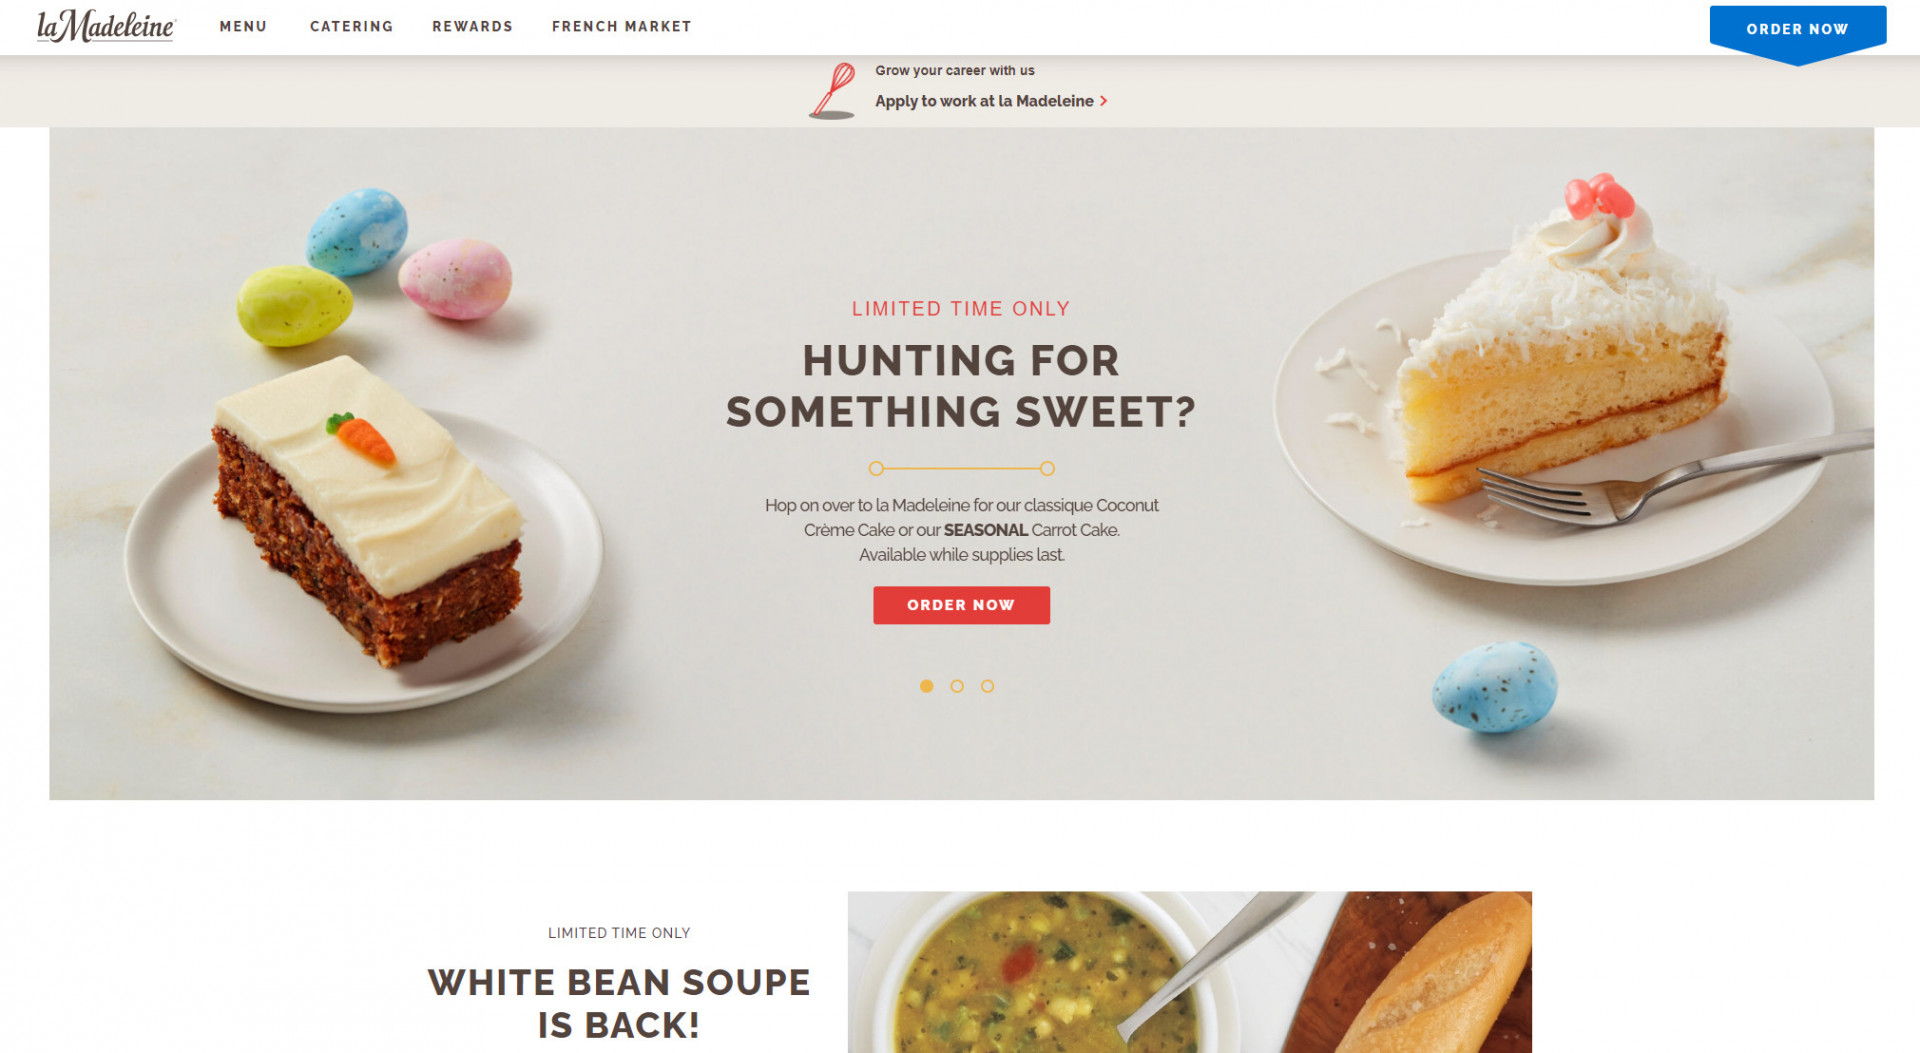 An example restaurant website template for restaurants that serve dessert